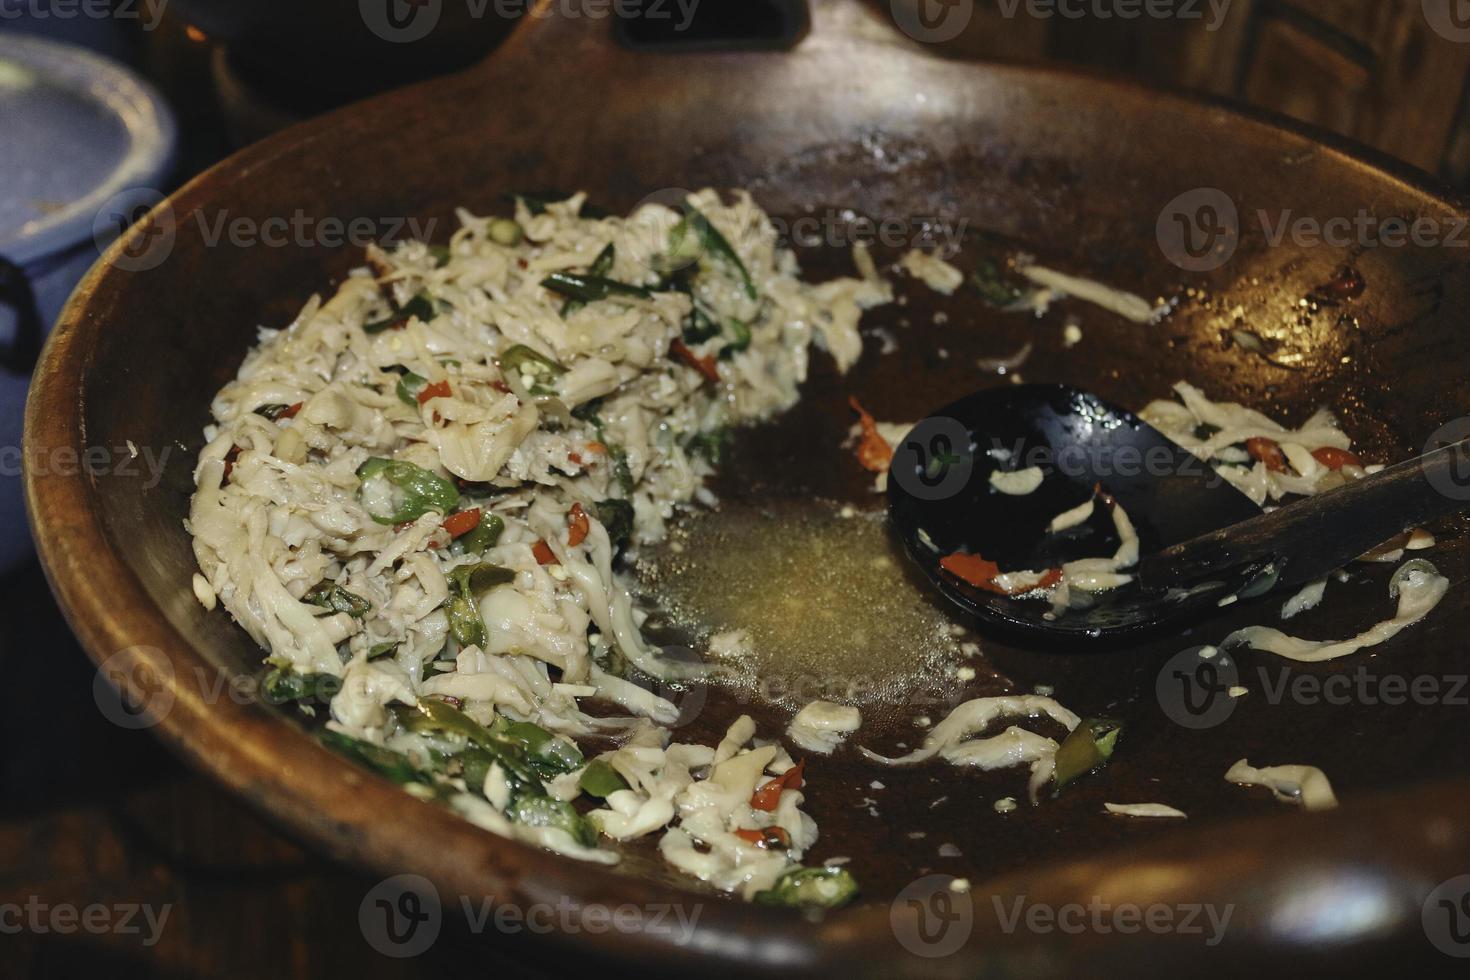 oseng jamur est un plat traditionnel composé de champignons bouillis, d'assaisonnements et de piment. photo